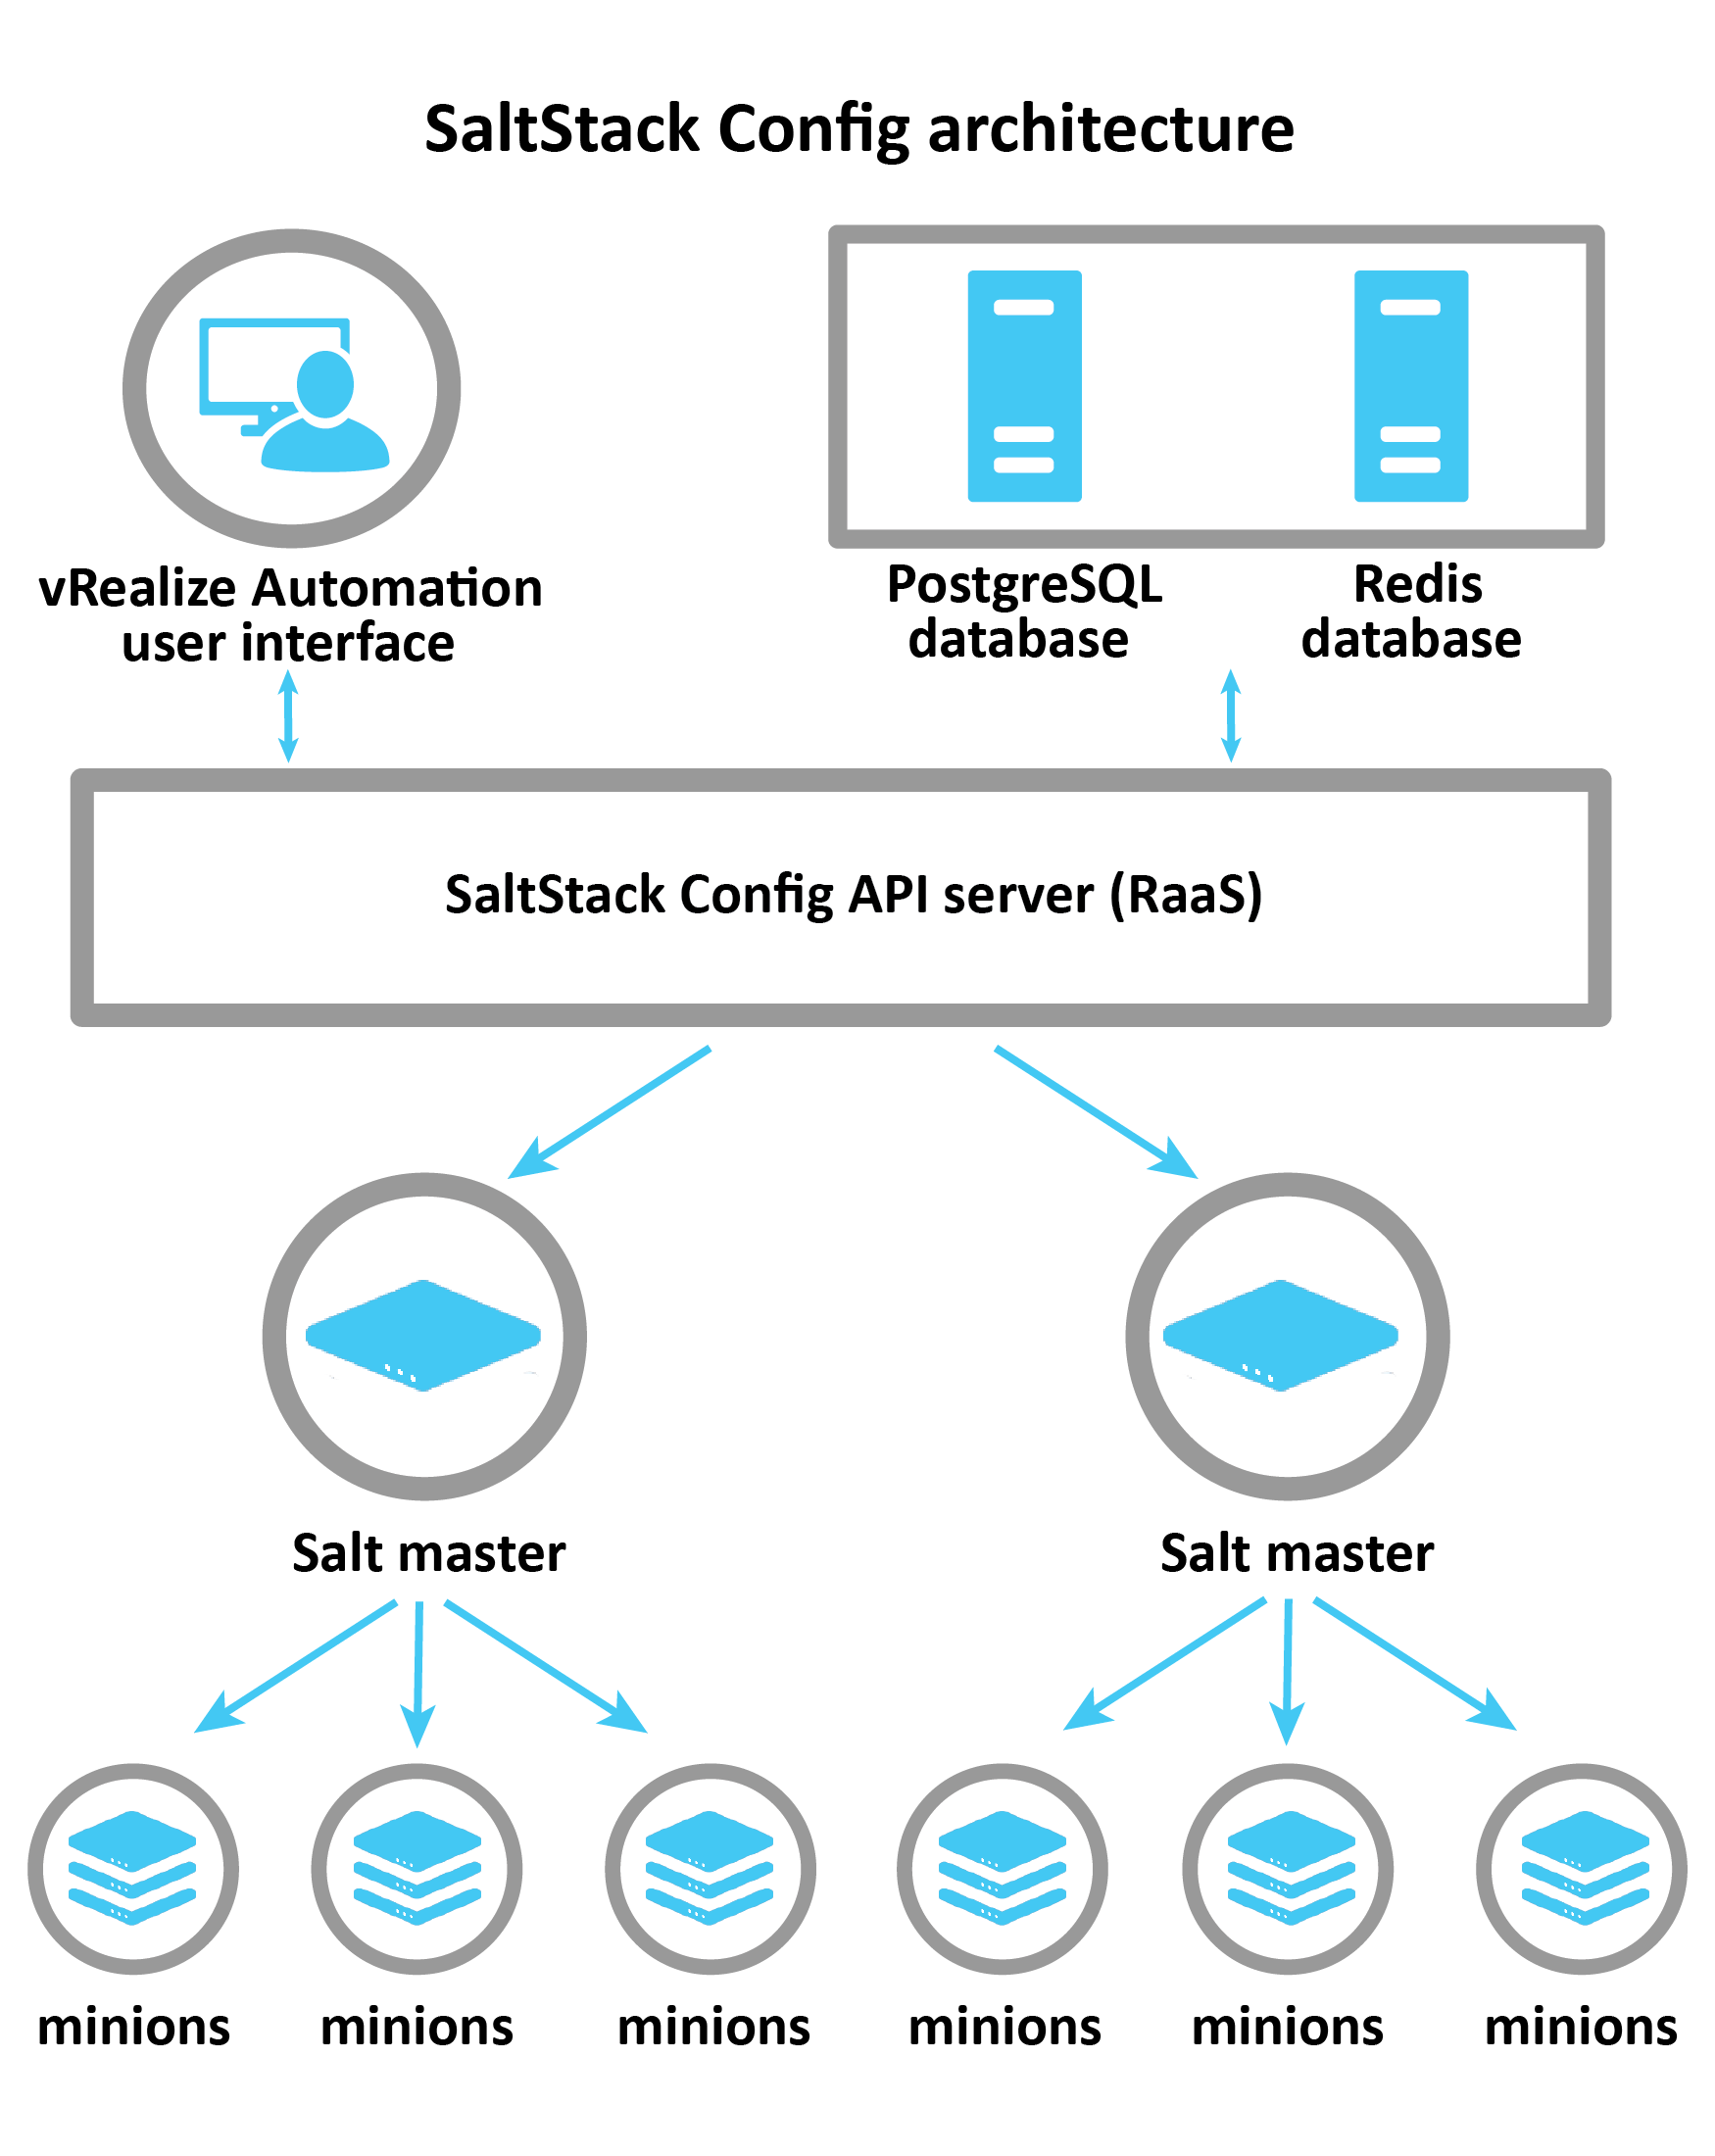 Diagrama que explica la arquitectura de SaltStack Config: vRA, Postgress y Redis se conectan al servidor RaaS, que controla los maestros de Salt. A continuación, los maestros de Salt pasan información a minions individuales.